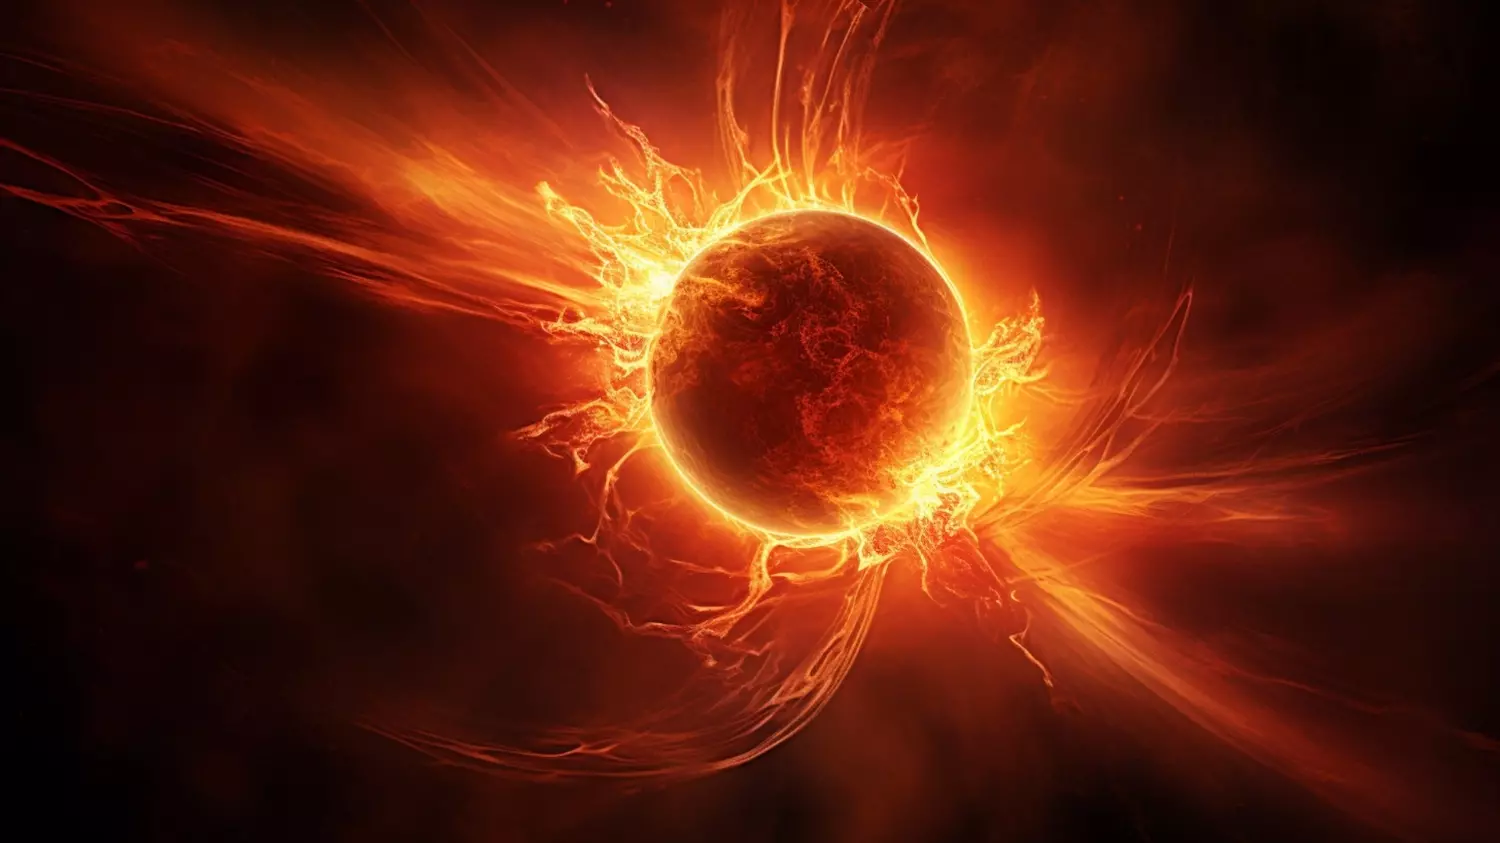 Ученые предположили, что Солнце, вопреки ранним прогнозам, могло уже войти в самую активную и опасную фазу своего 11-летнего солнечного цикла